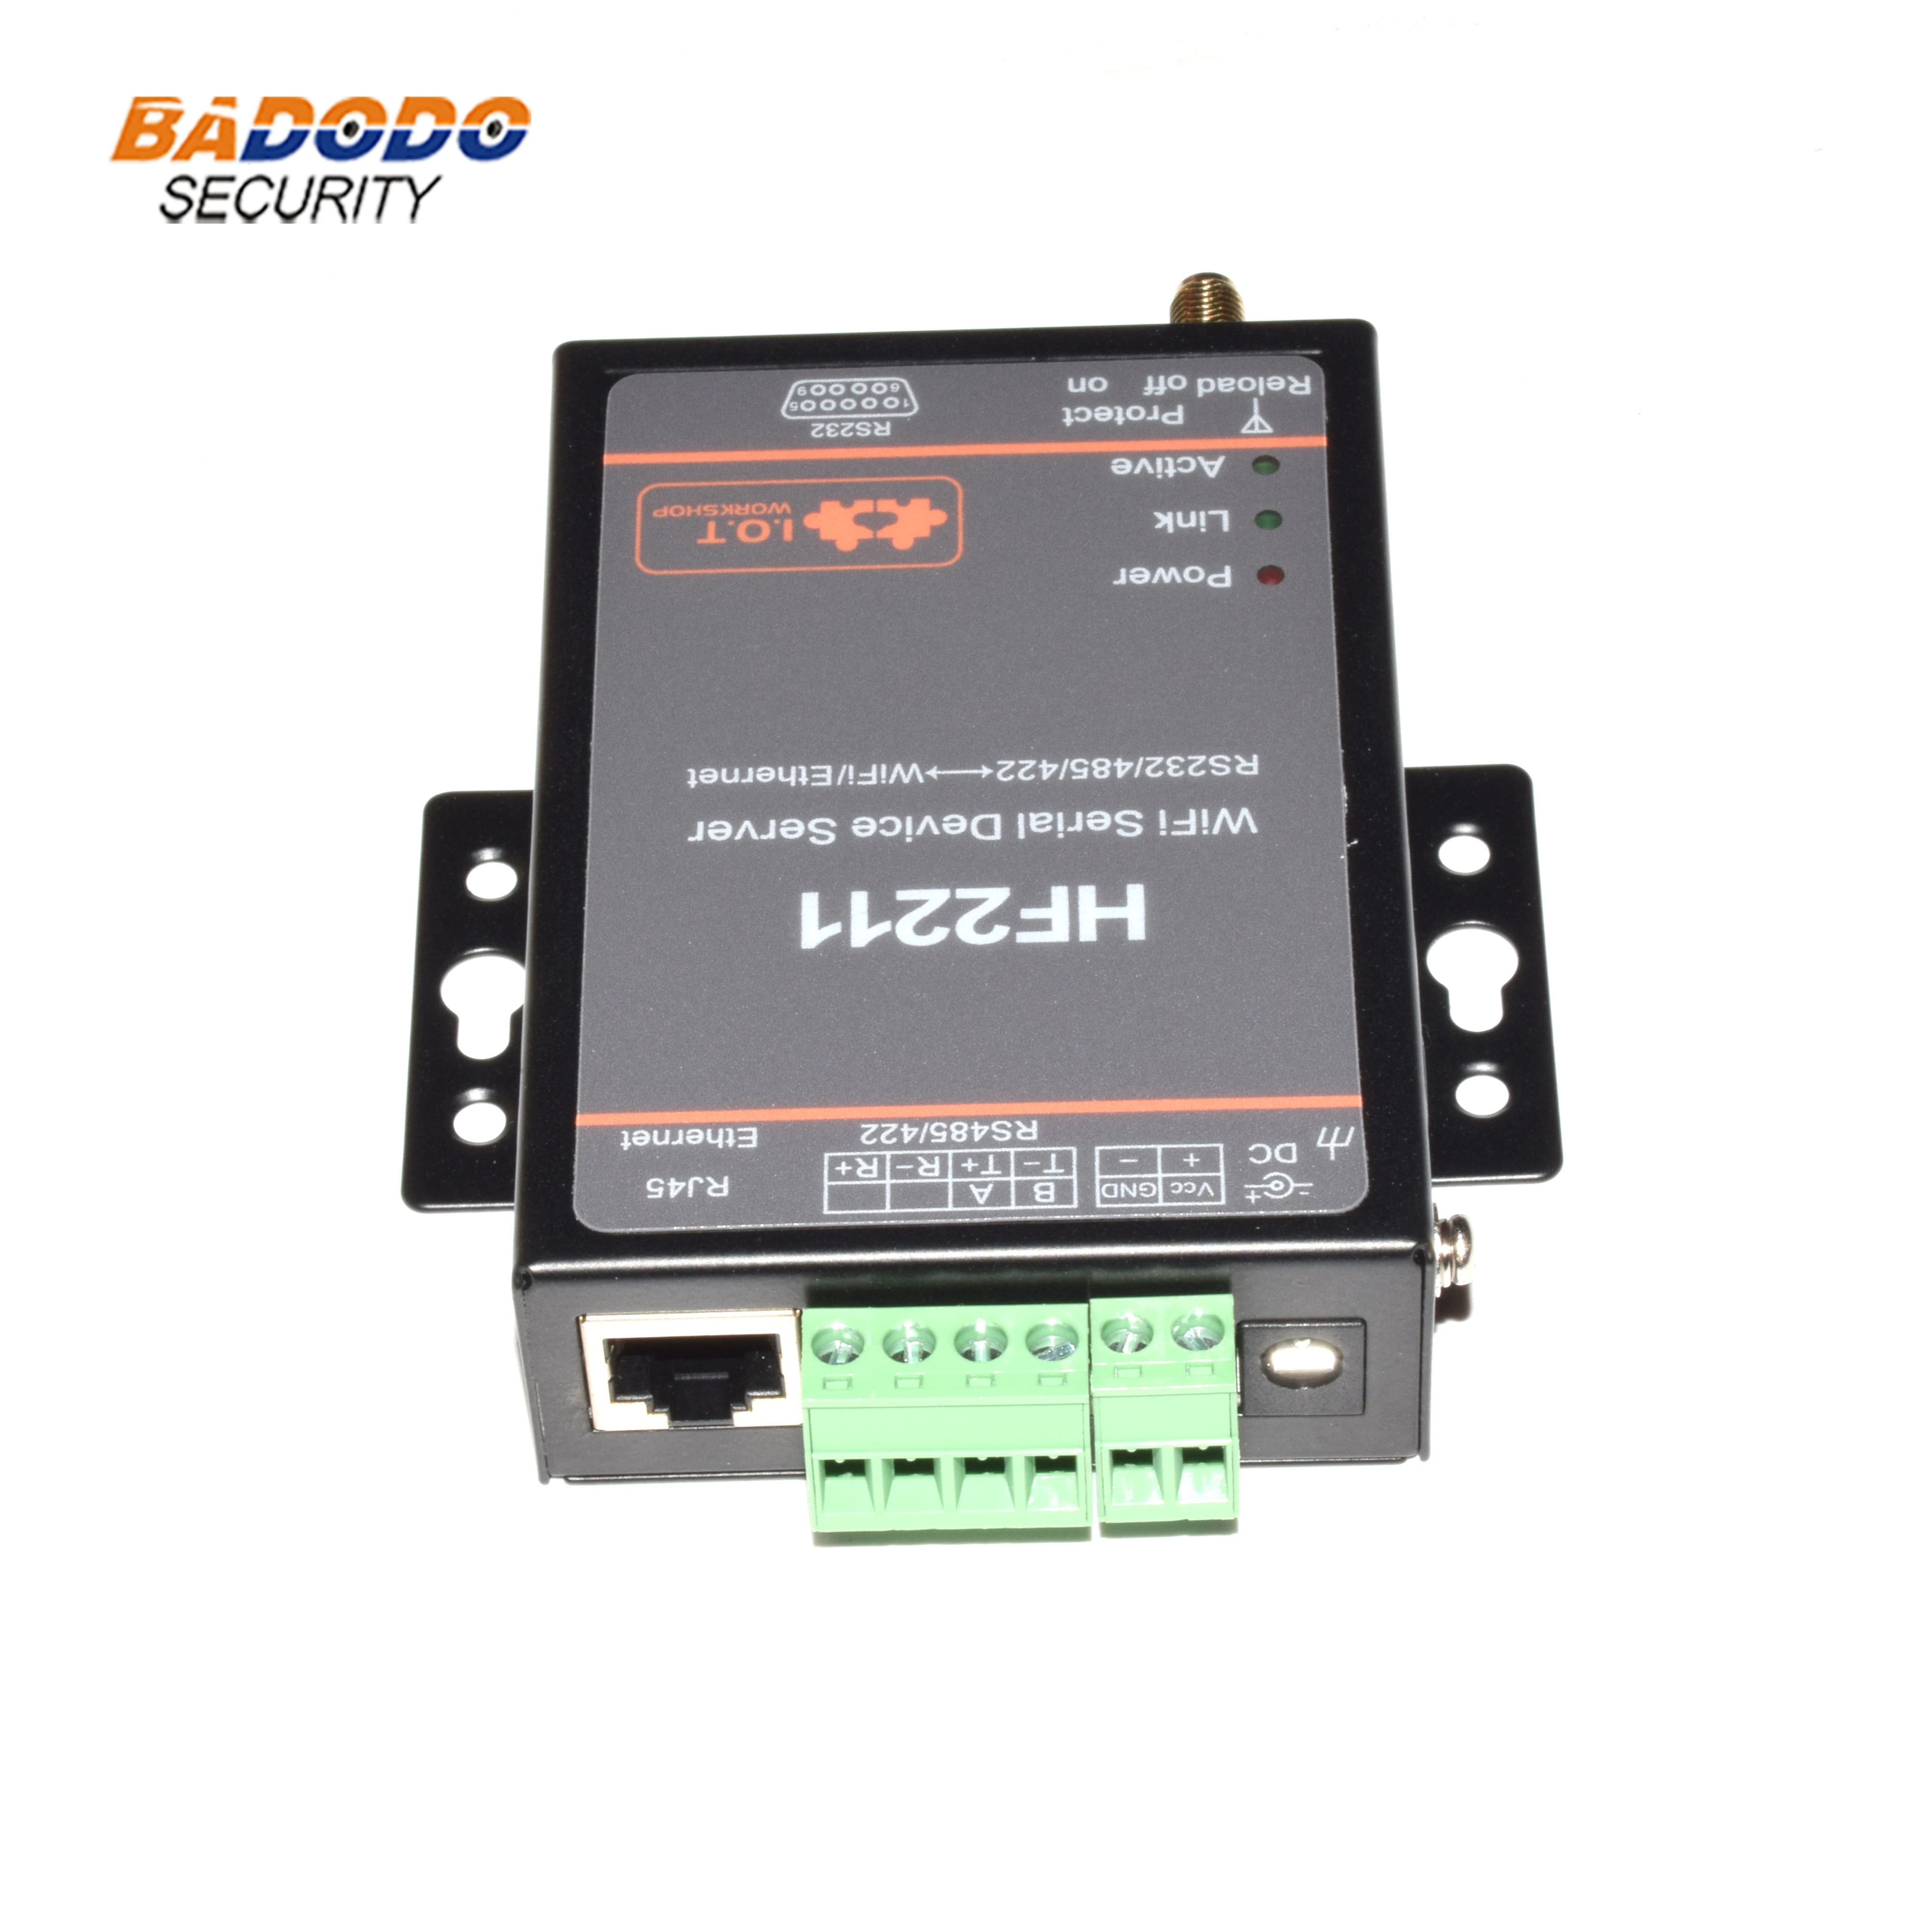 HF2211 последовательный порт сервер RS232/RS422/RS485 к WiFi/Ethernet преобразования поддержка TCP/IP/Telnet/Modbus TCP протокол